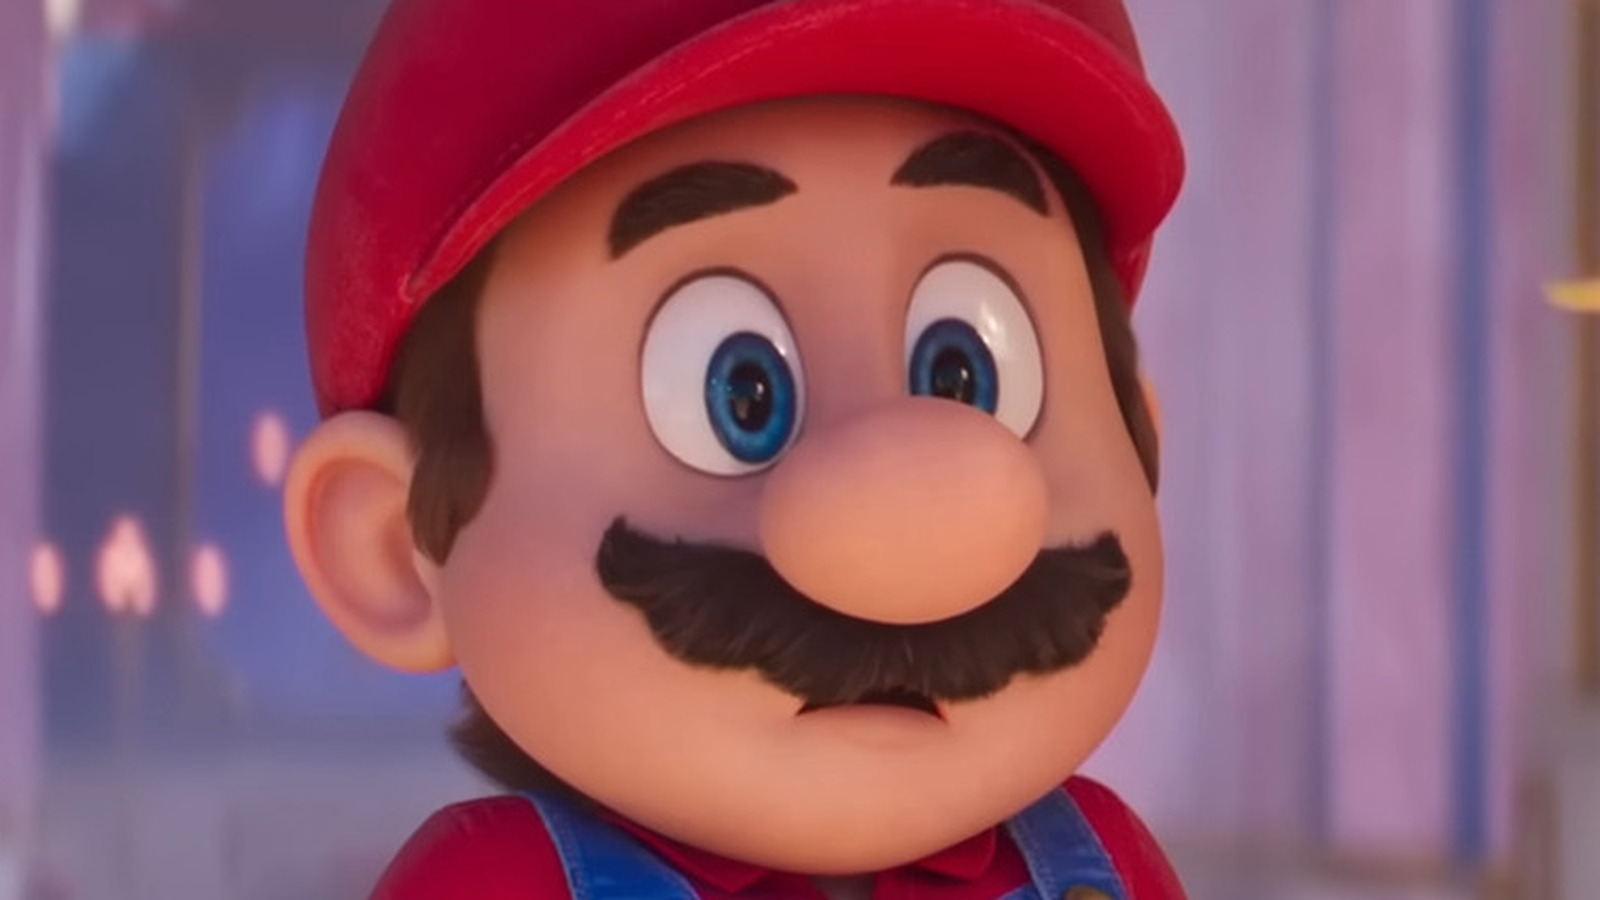 Mario animated close up chris pratt